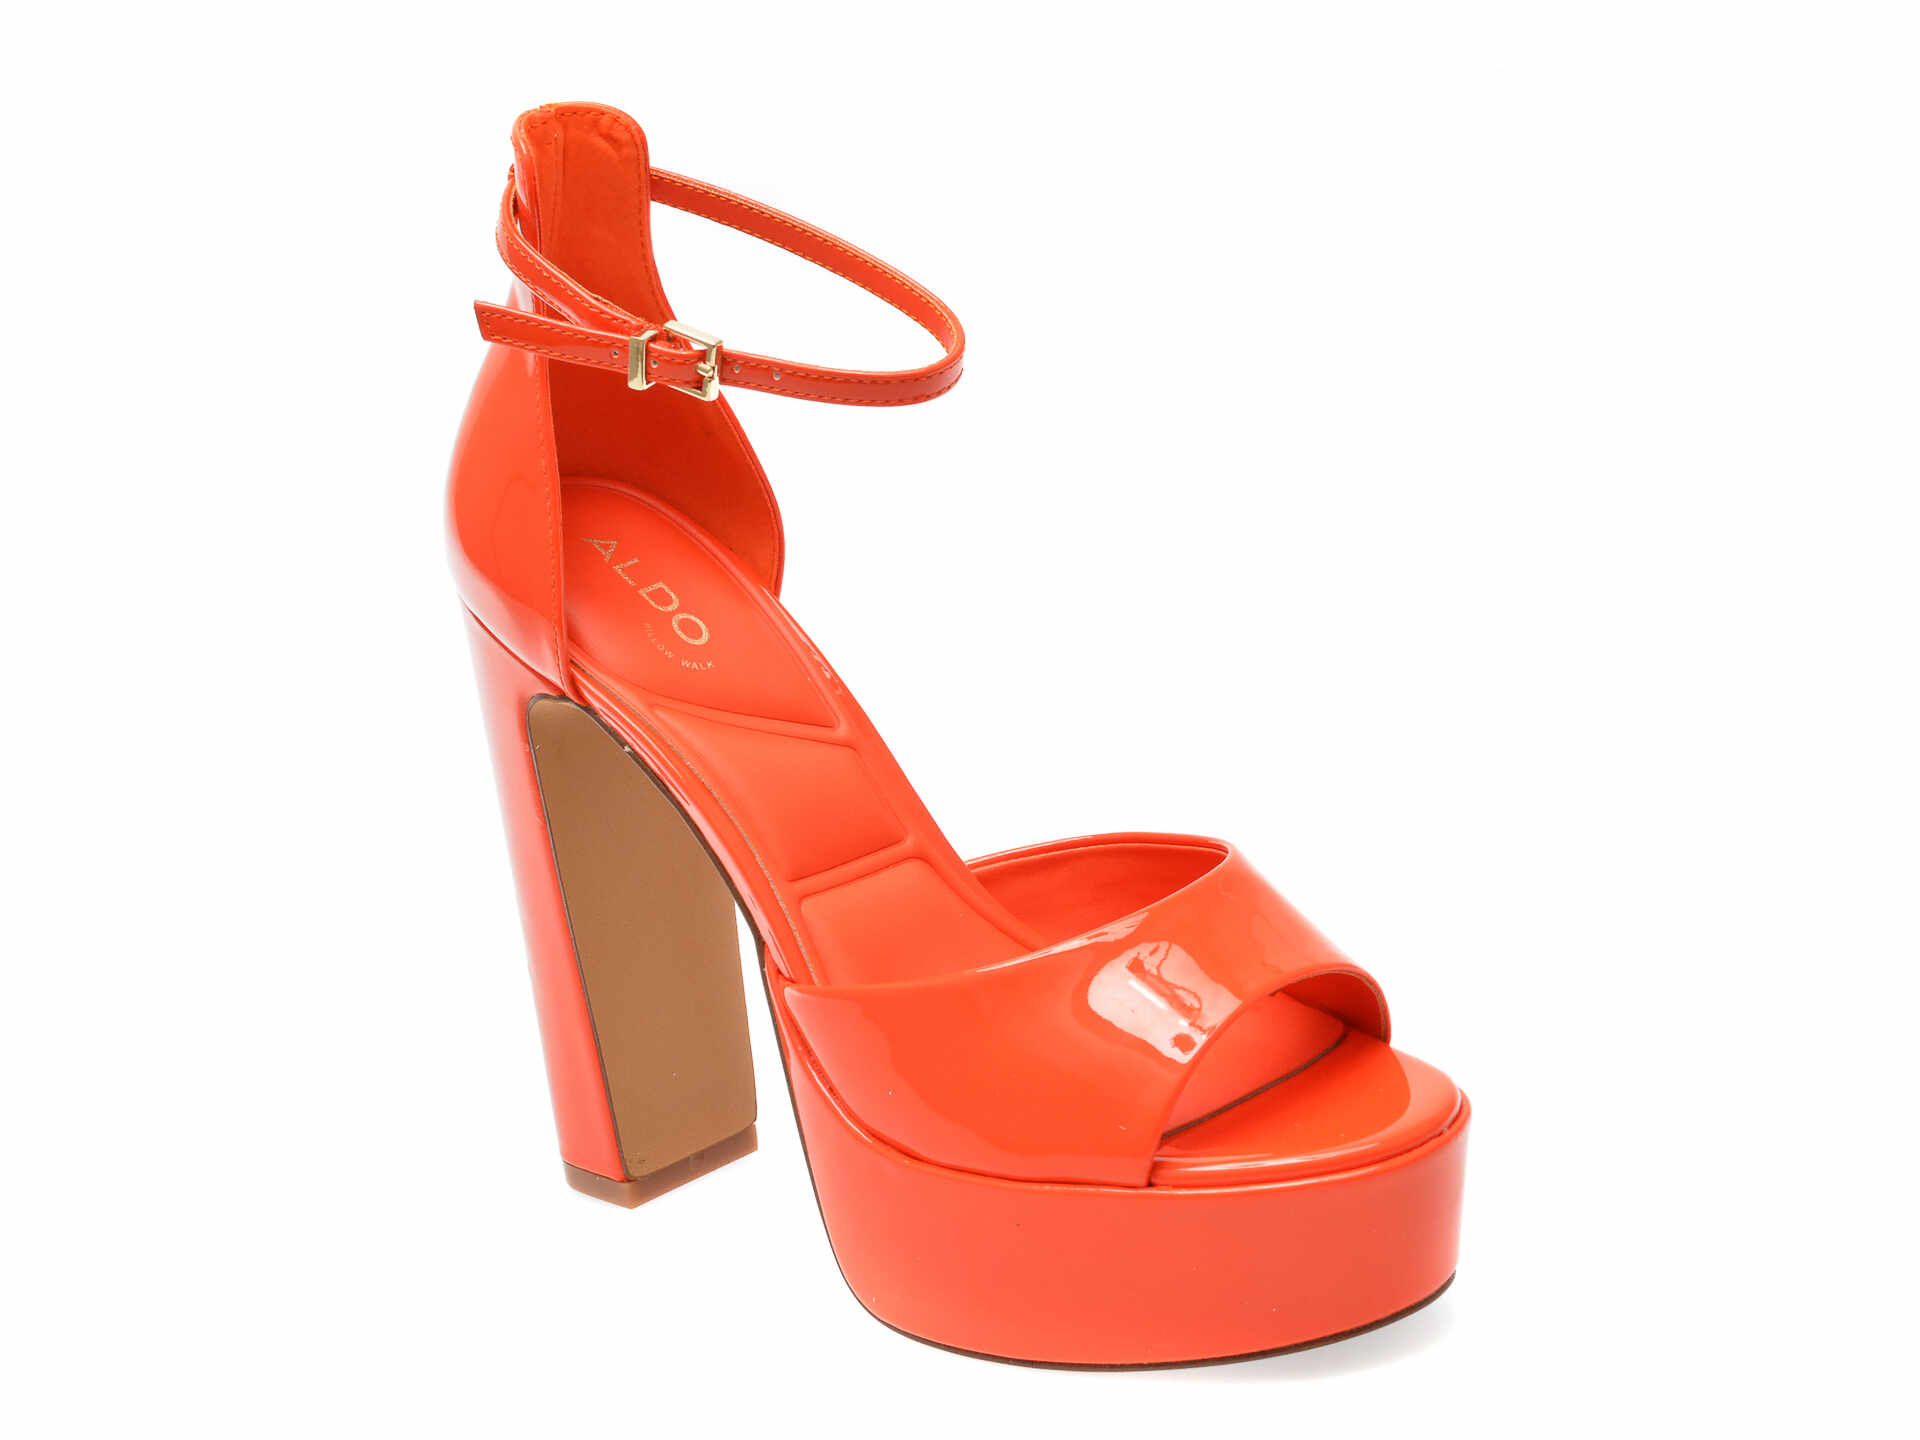 Sandale ALDO portocalii, NISSA820, din piele ecologica